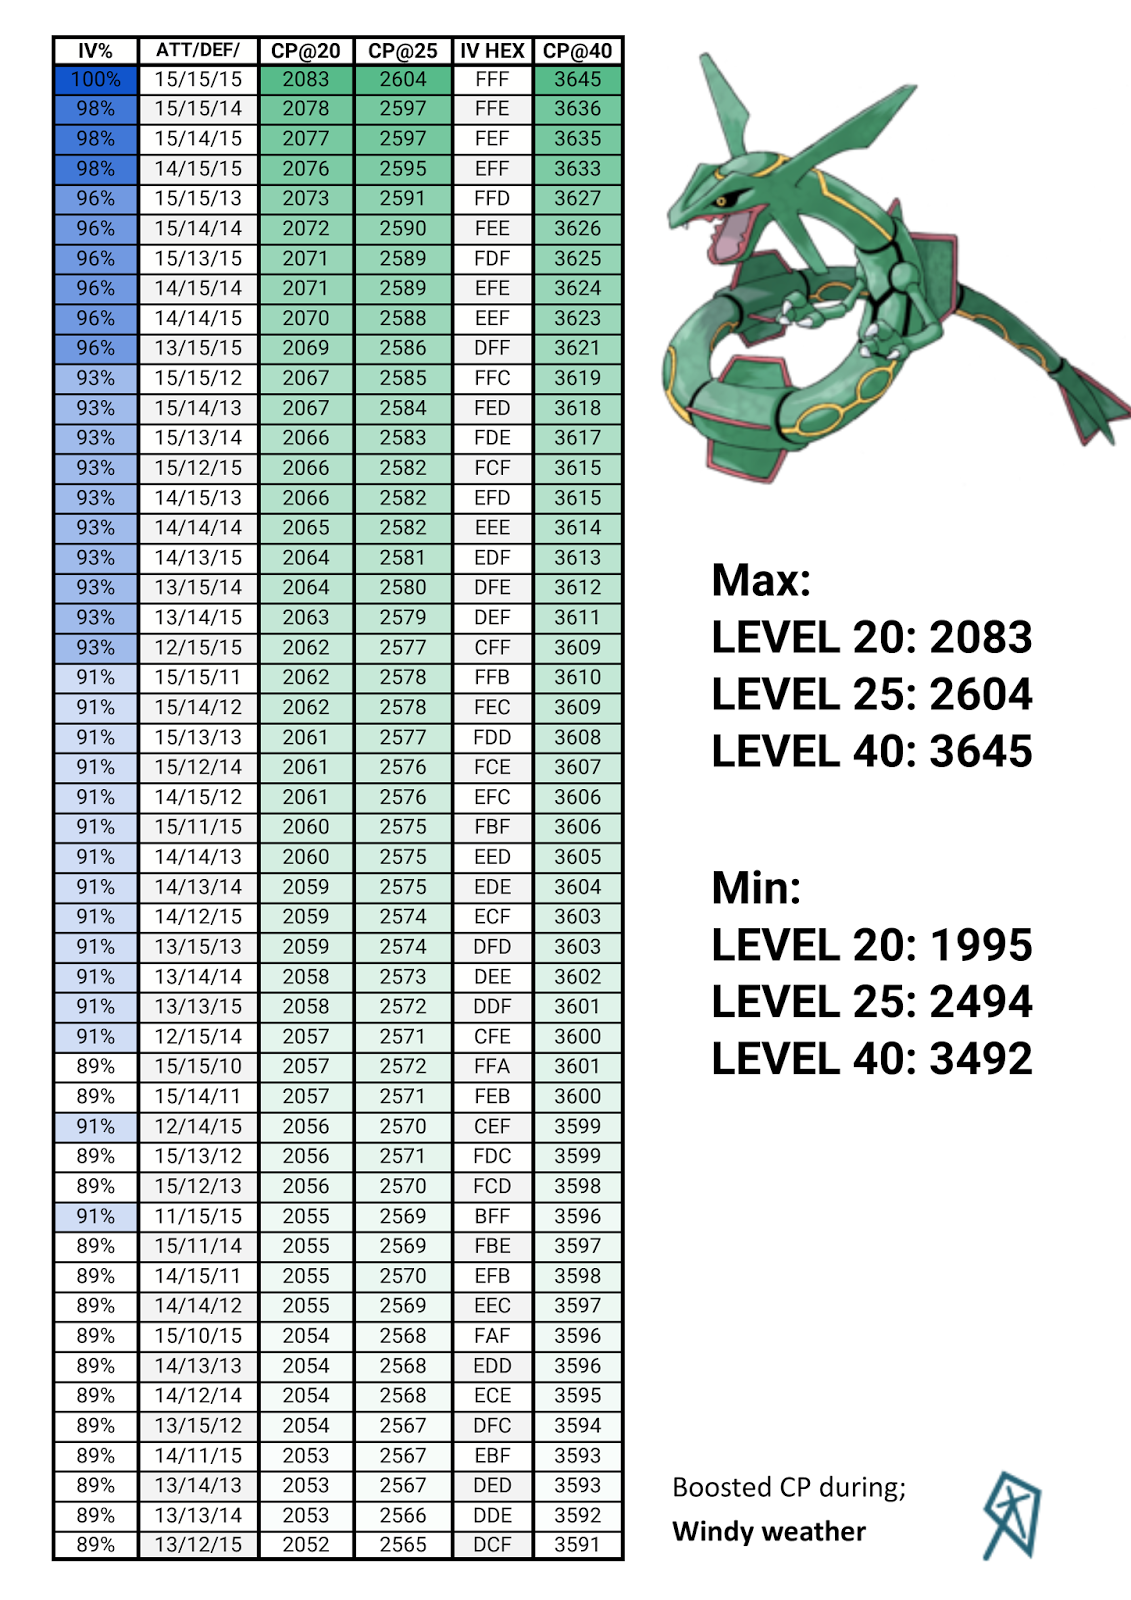 Pokémon GO tabela rácio